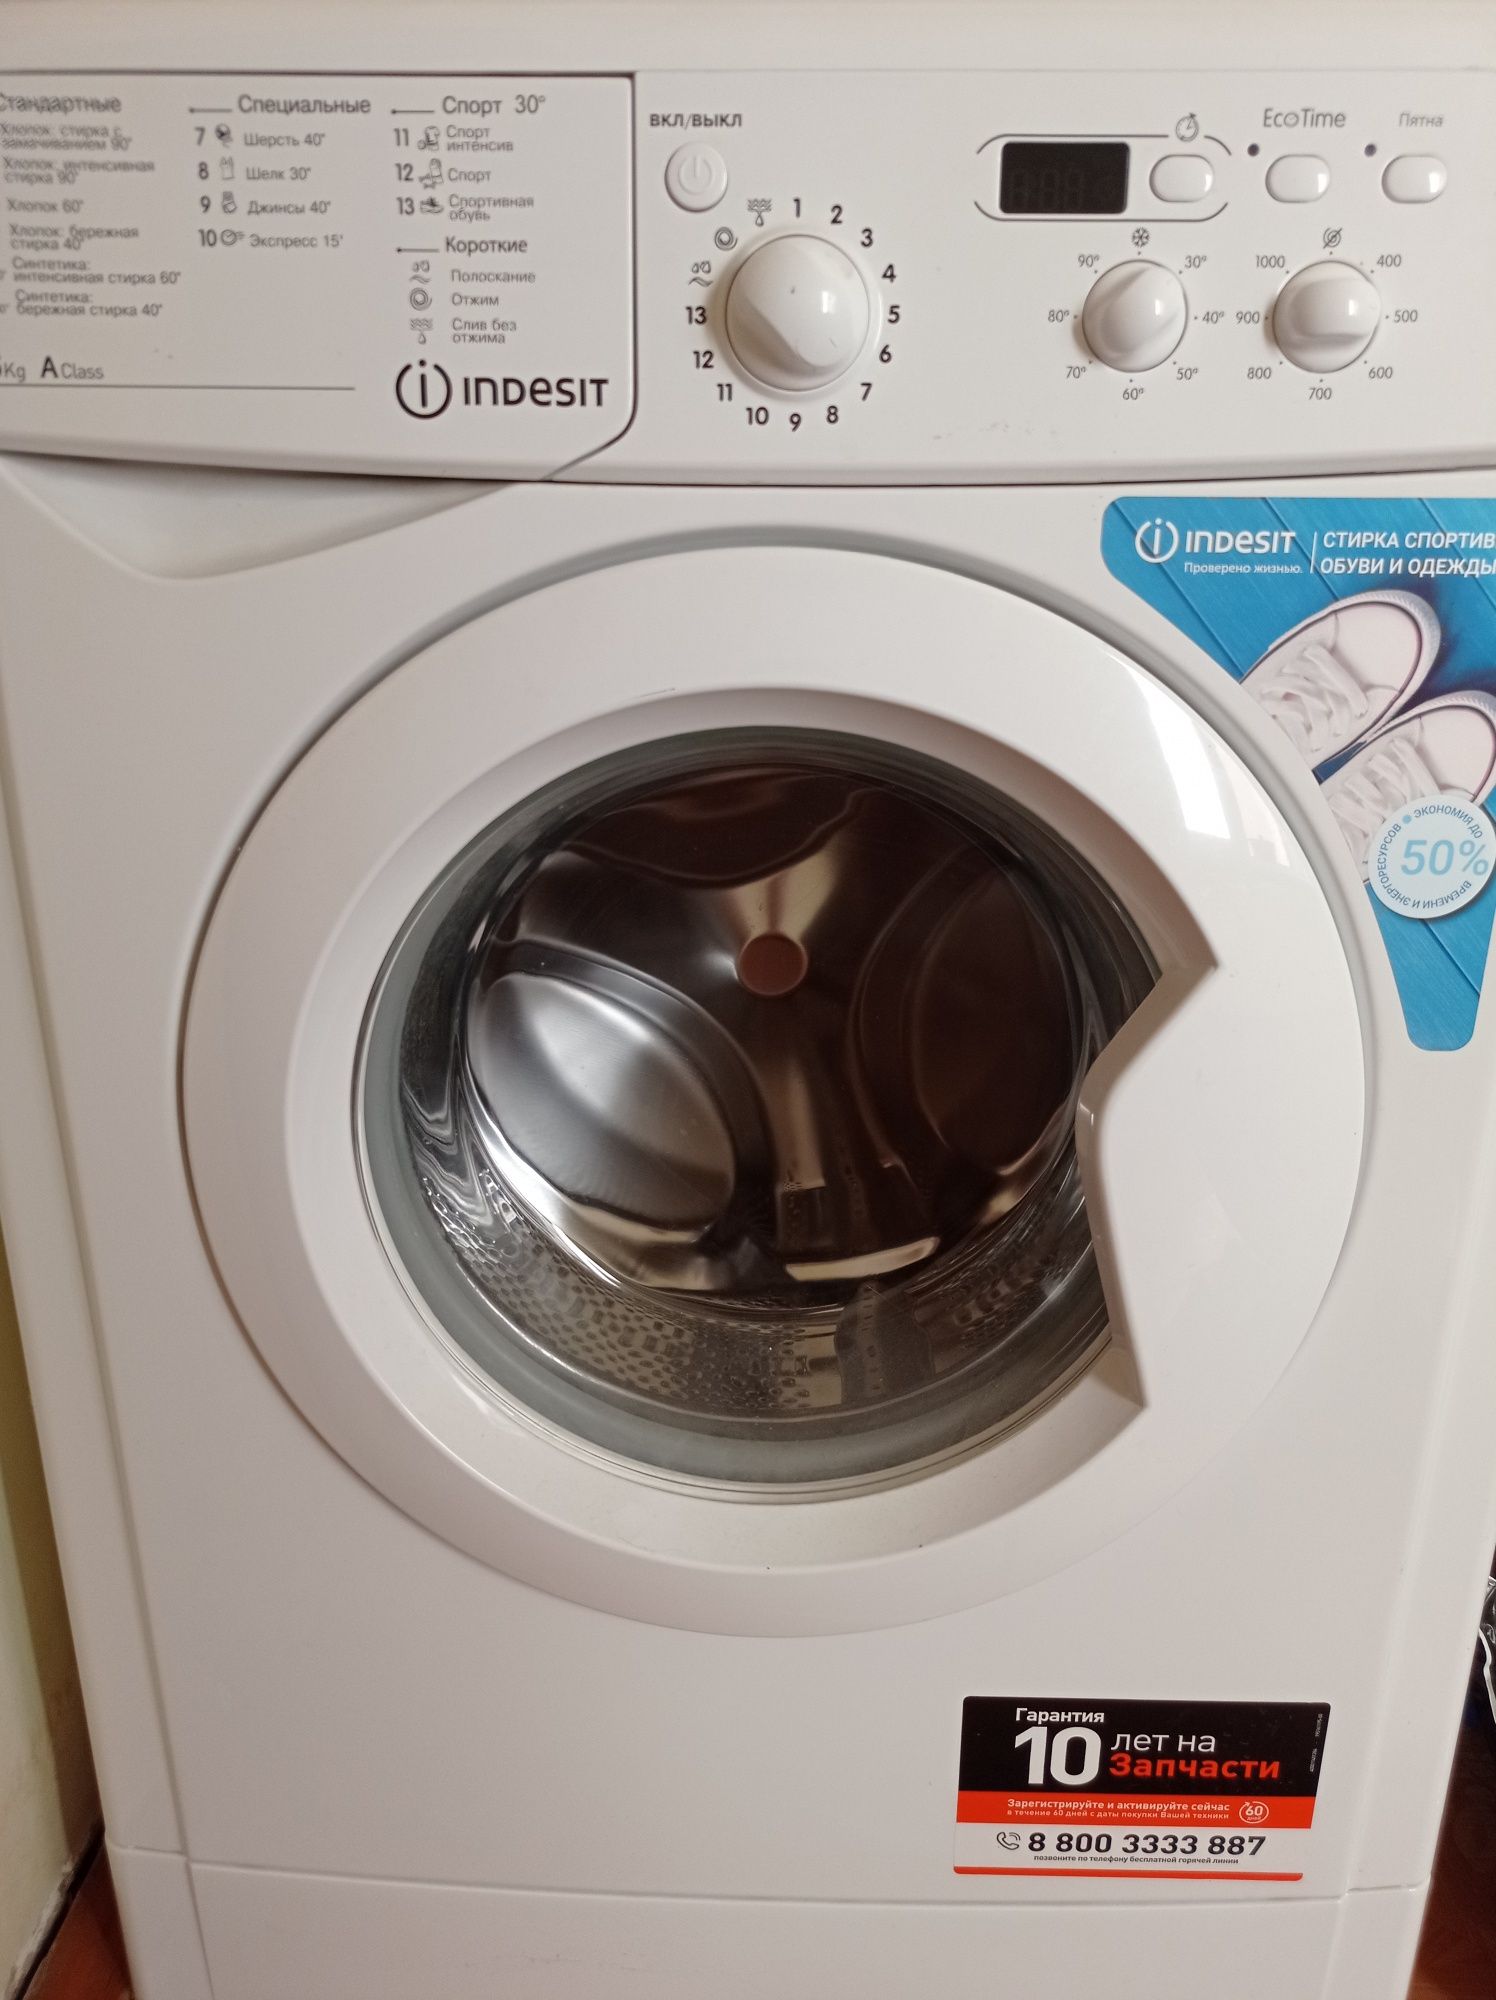 Продается новая стиральная машинка Индезит!